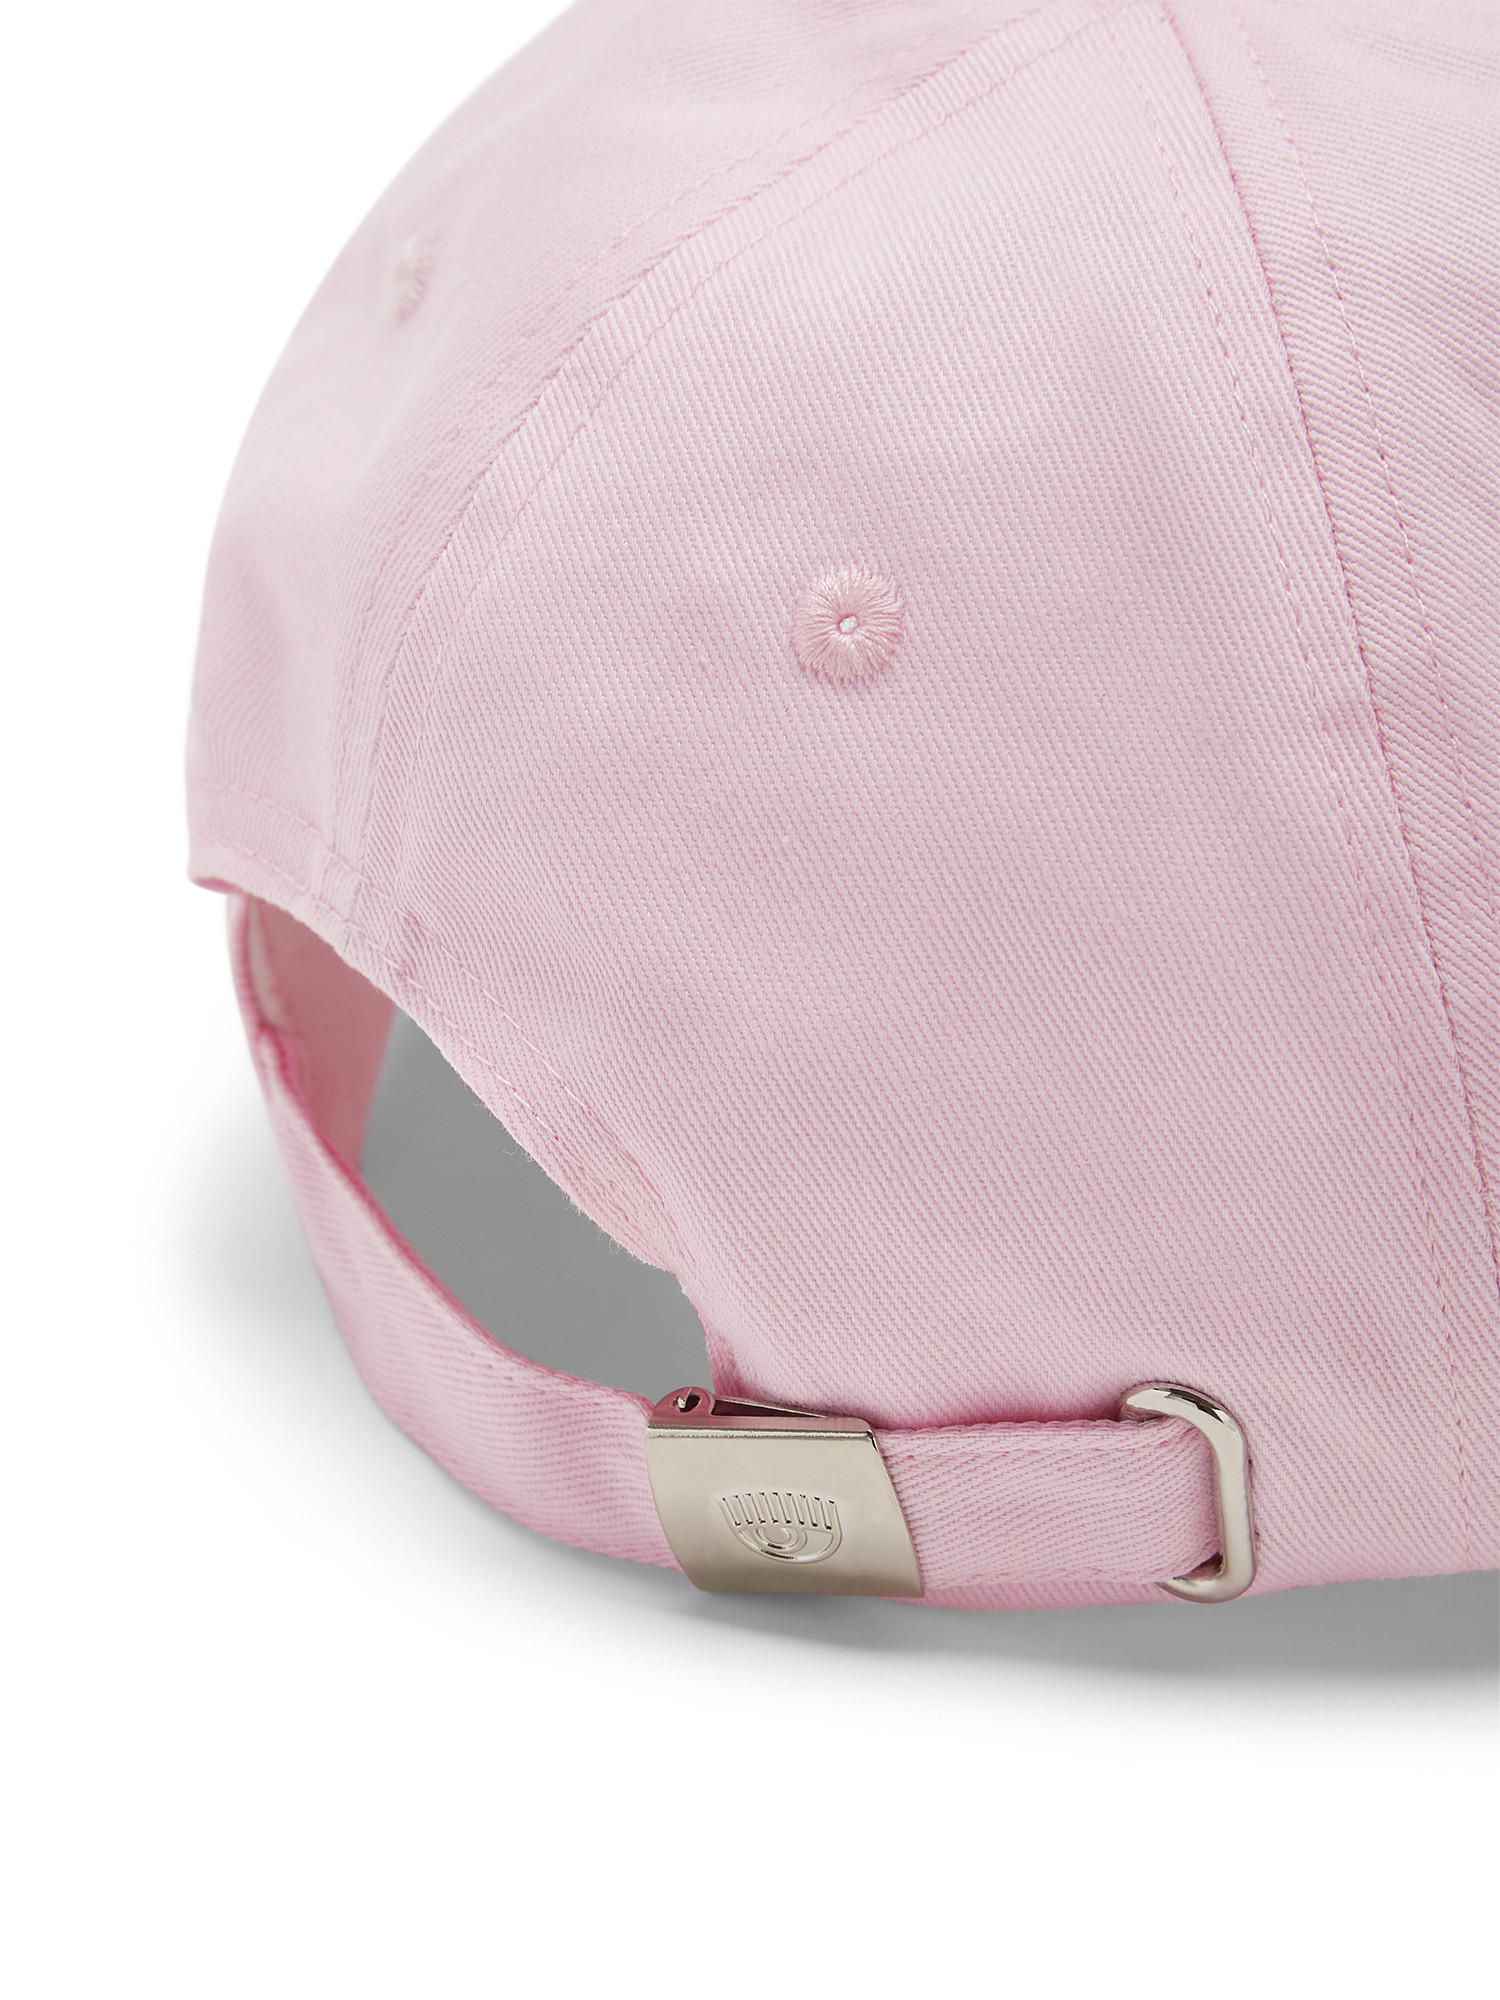 Chiara Ferragni - Eye Star baseball hat, Pink, large image number 1